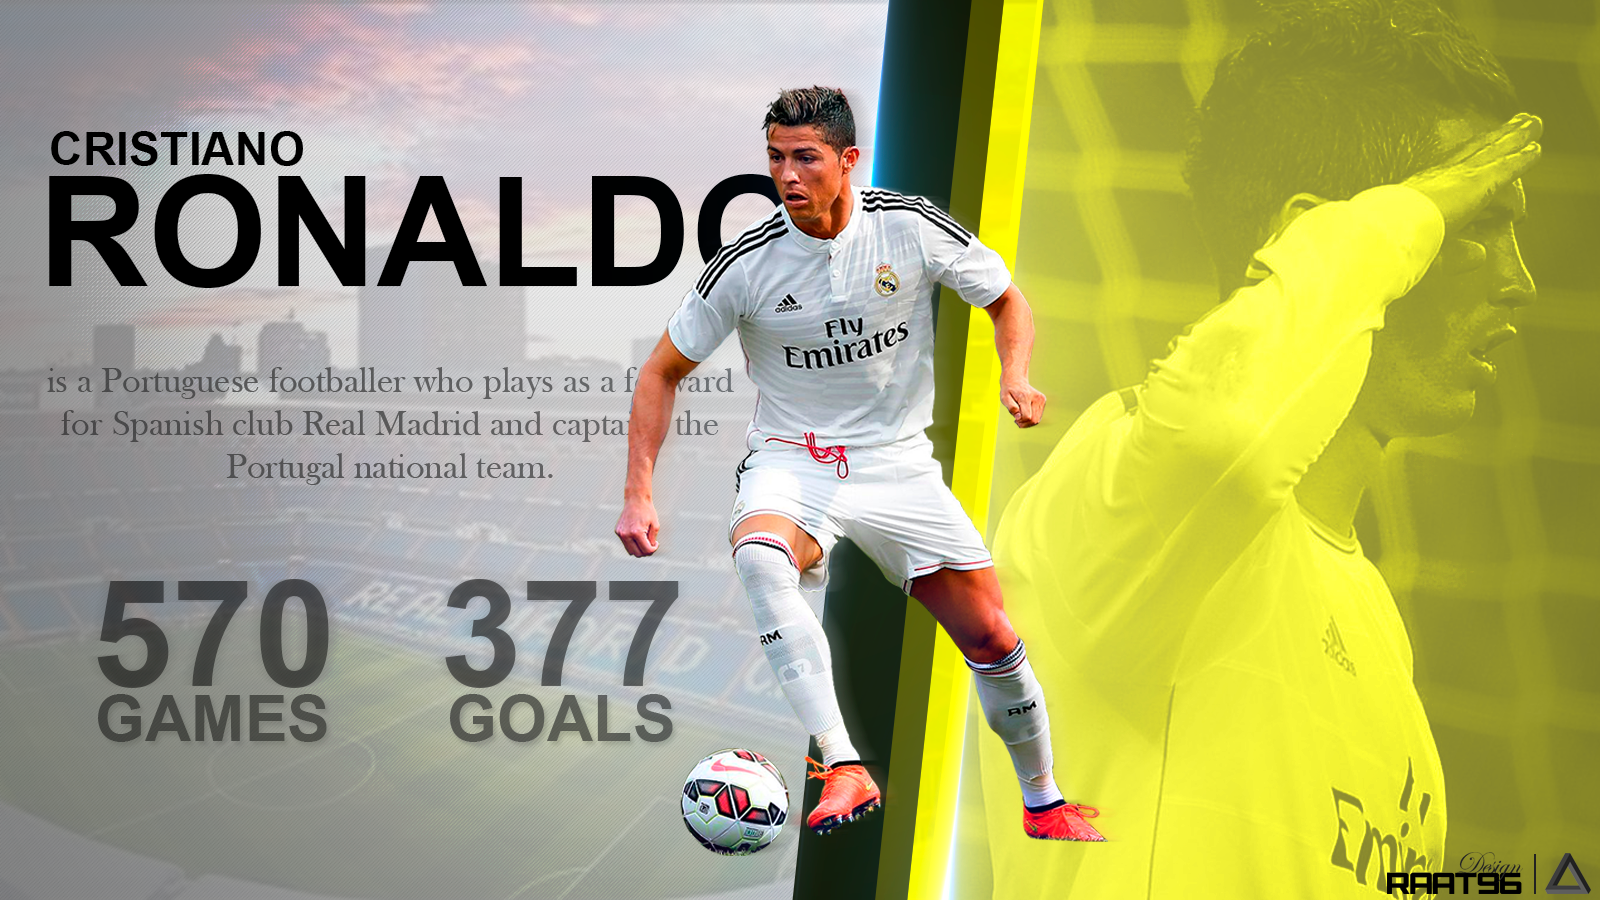 Chia sẻ 100 hình nền đẹp của Cristiano Ronaldo full HD - [Kích thước hình ảnh: 1600x900 px]